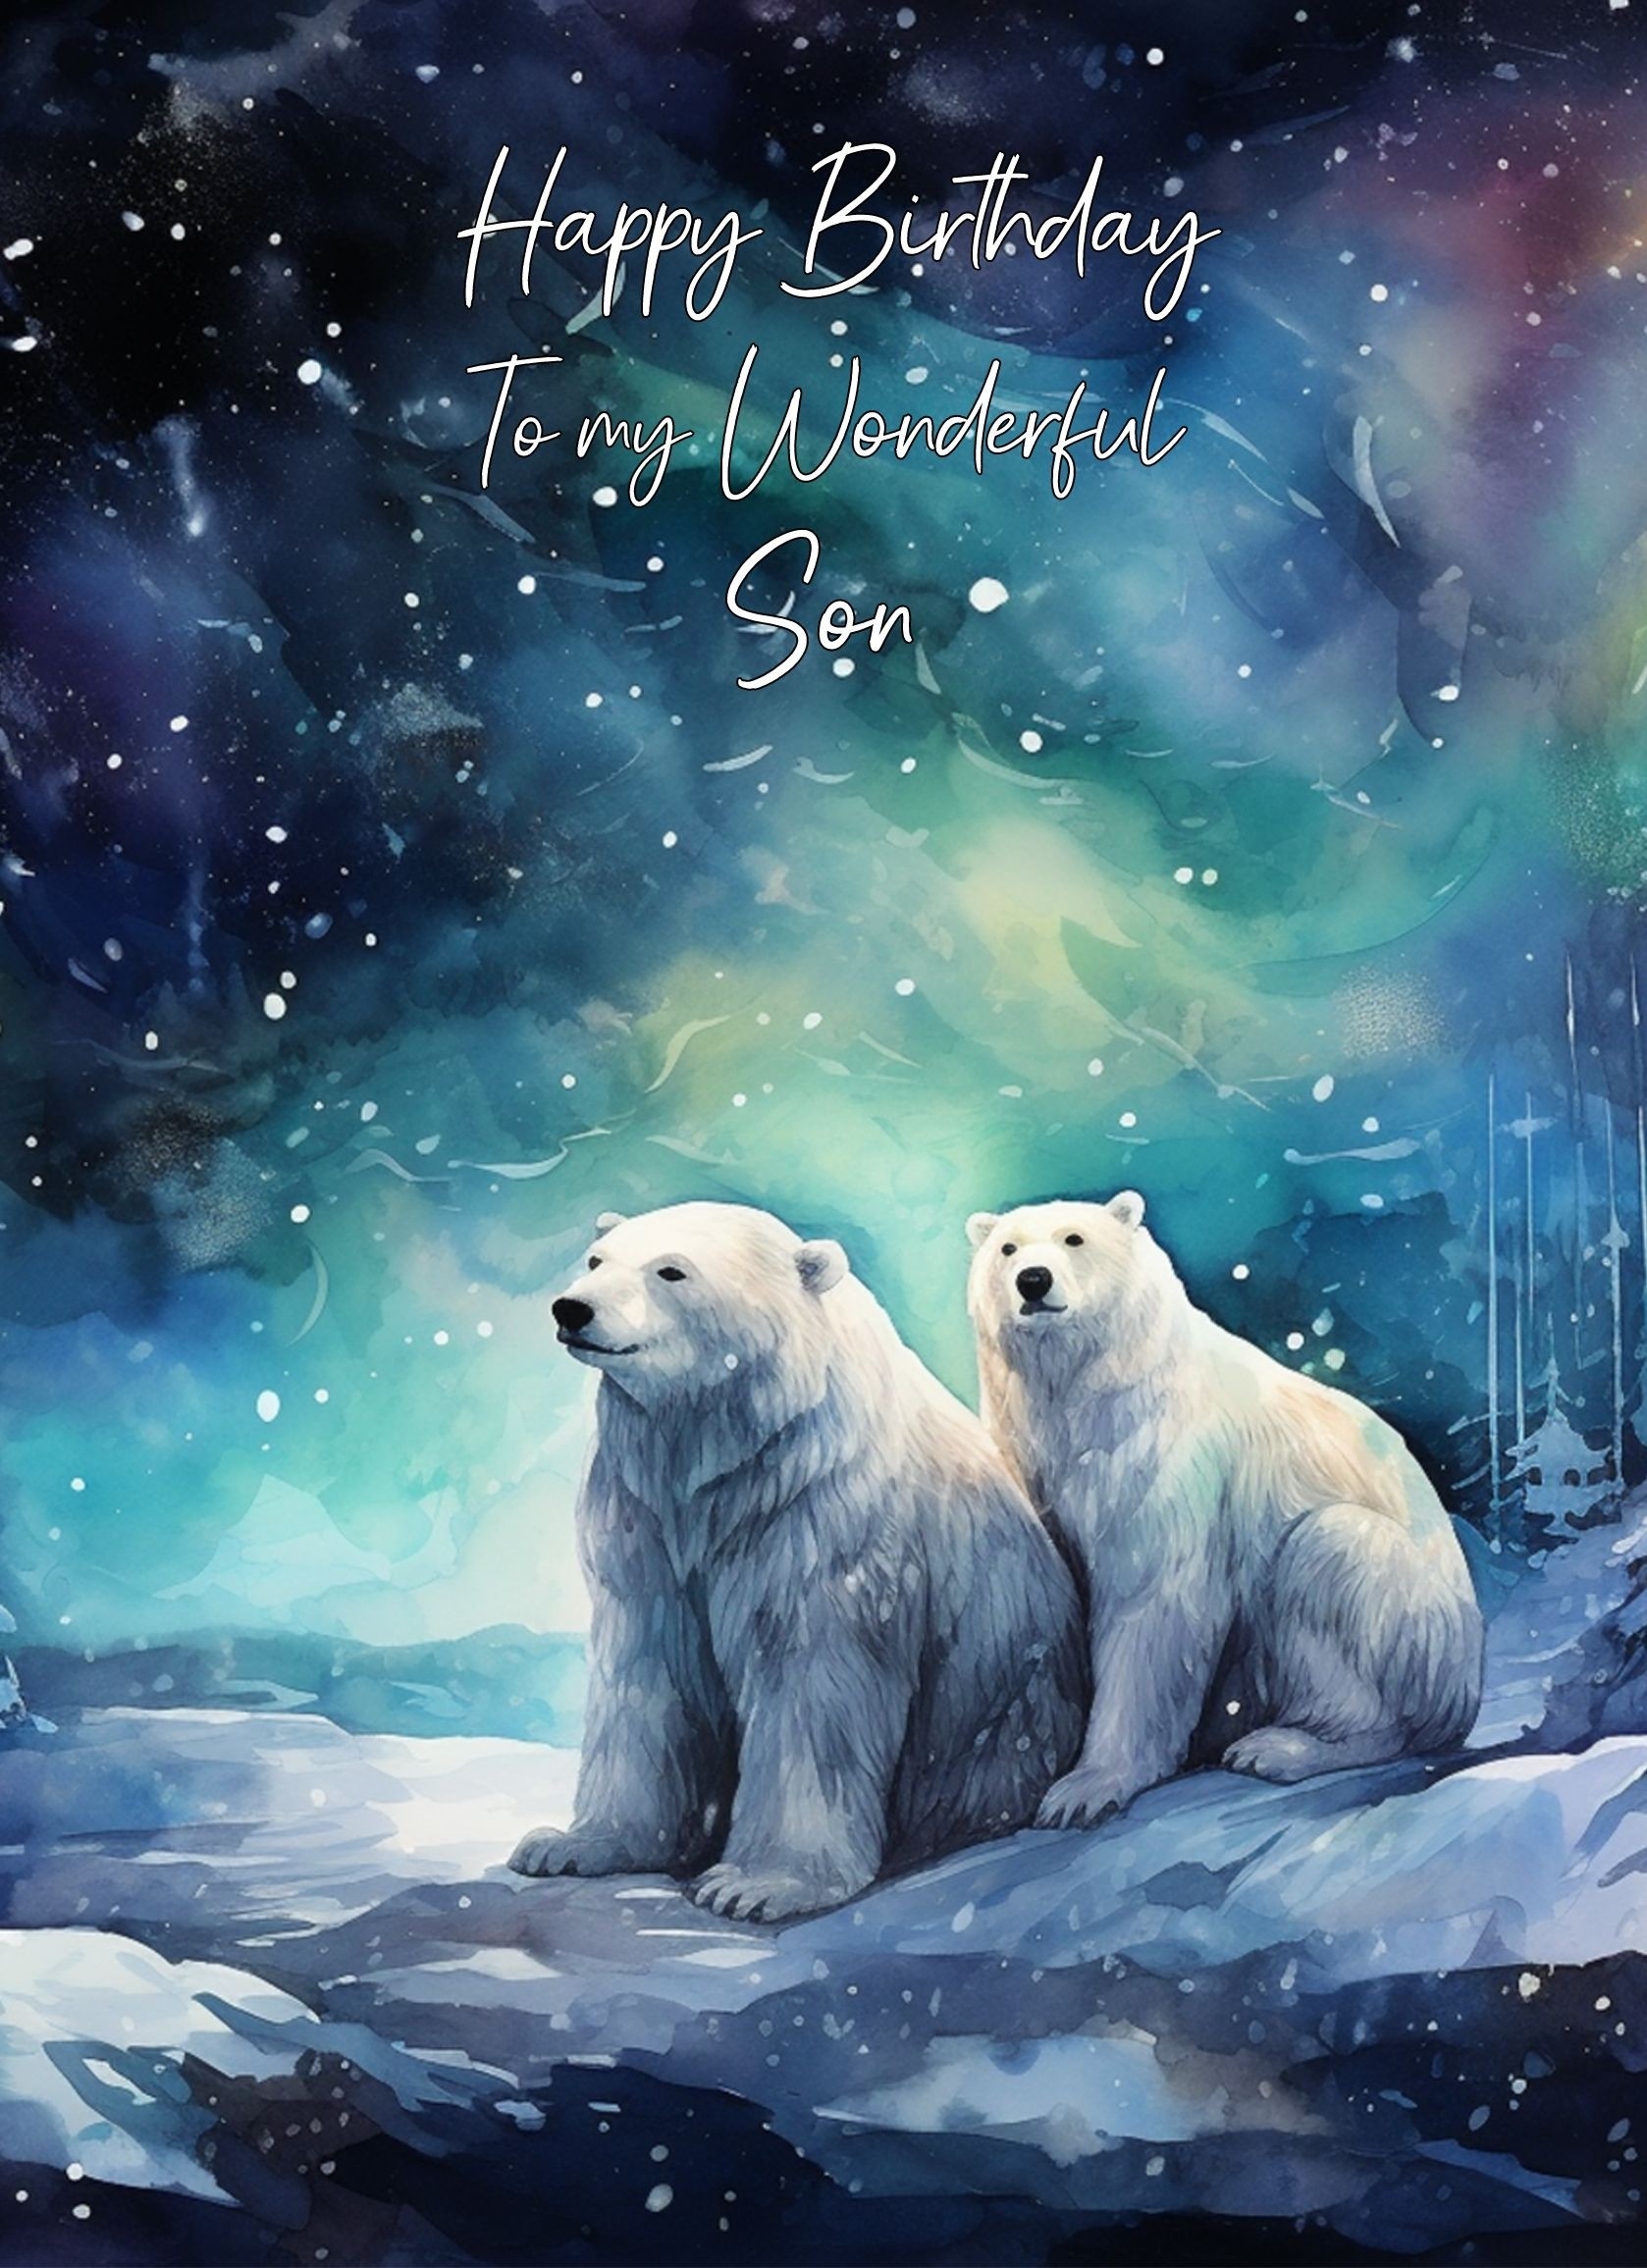 Polar Bear Art Birthday Card For Son (Design 5)